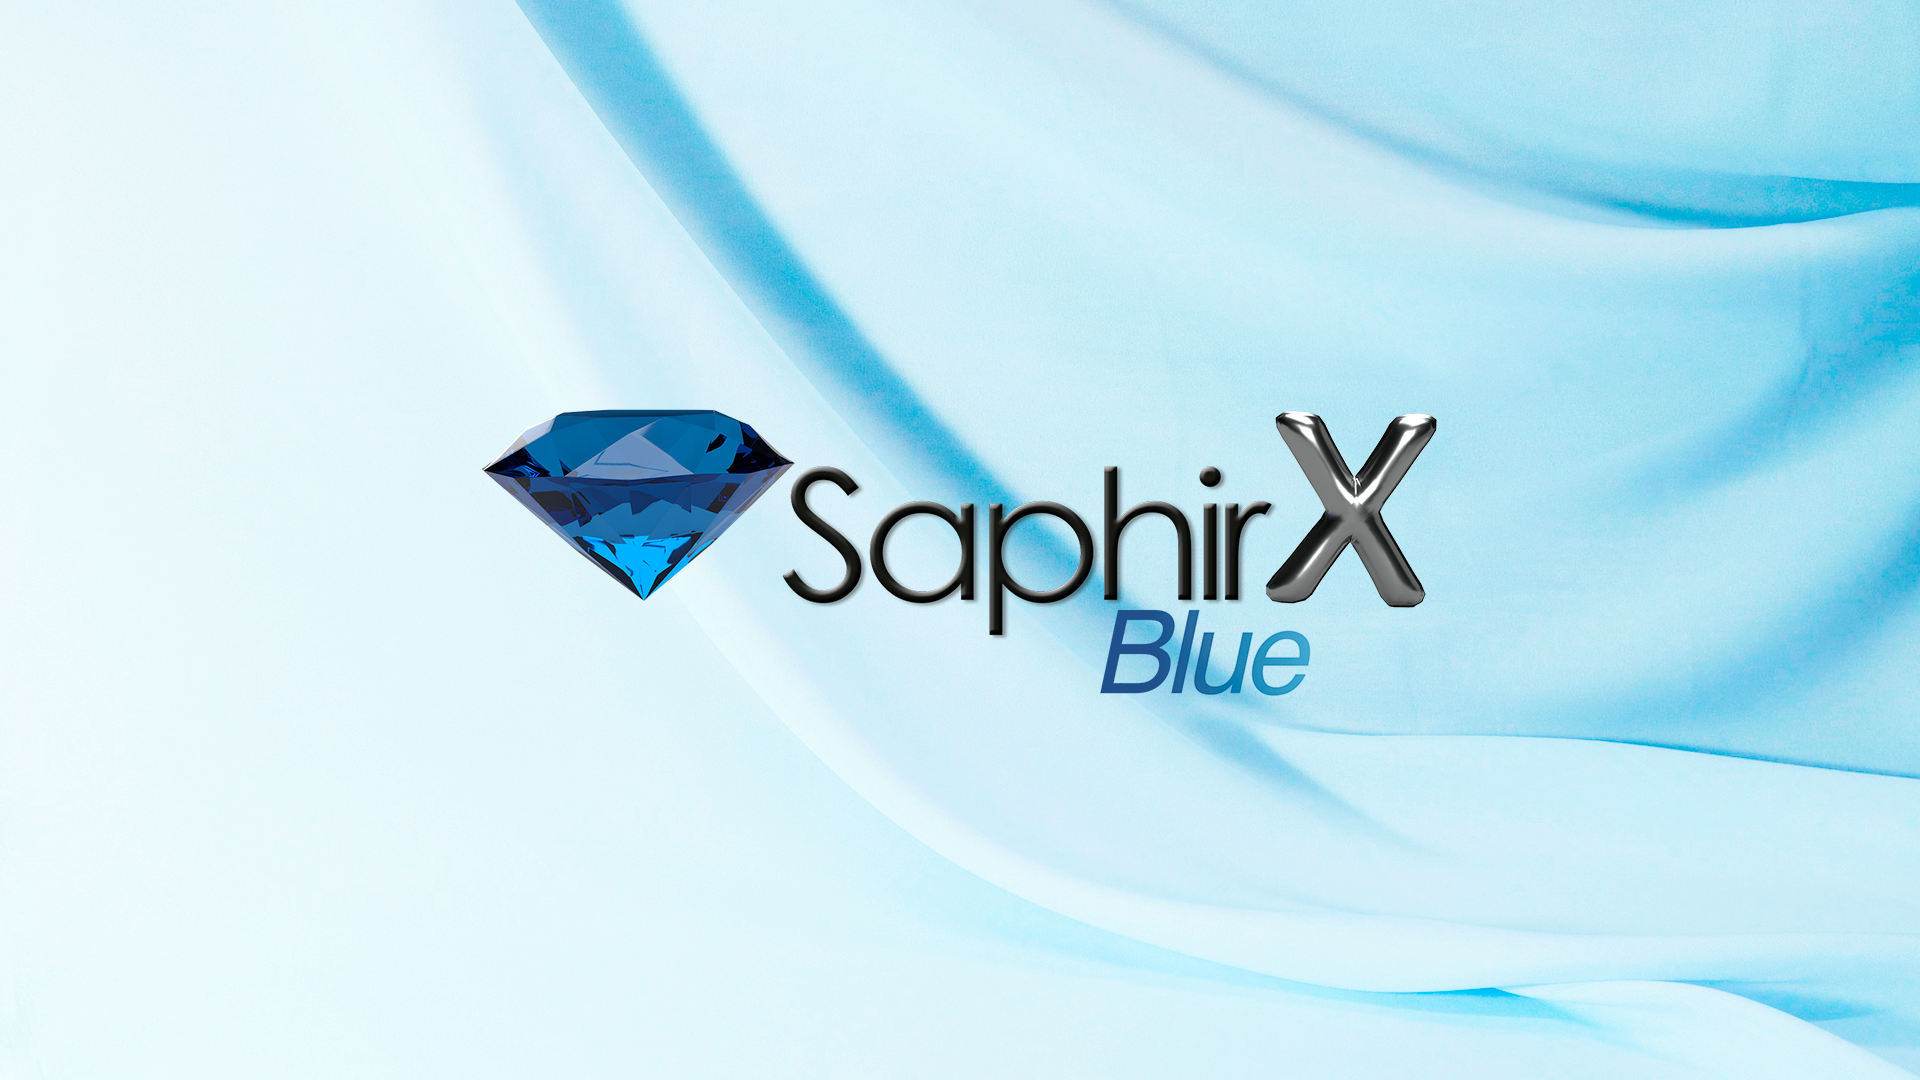 Saphirx Blue